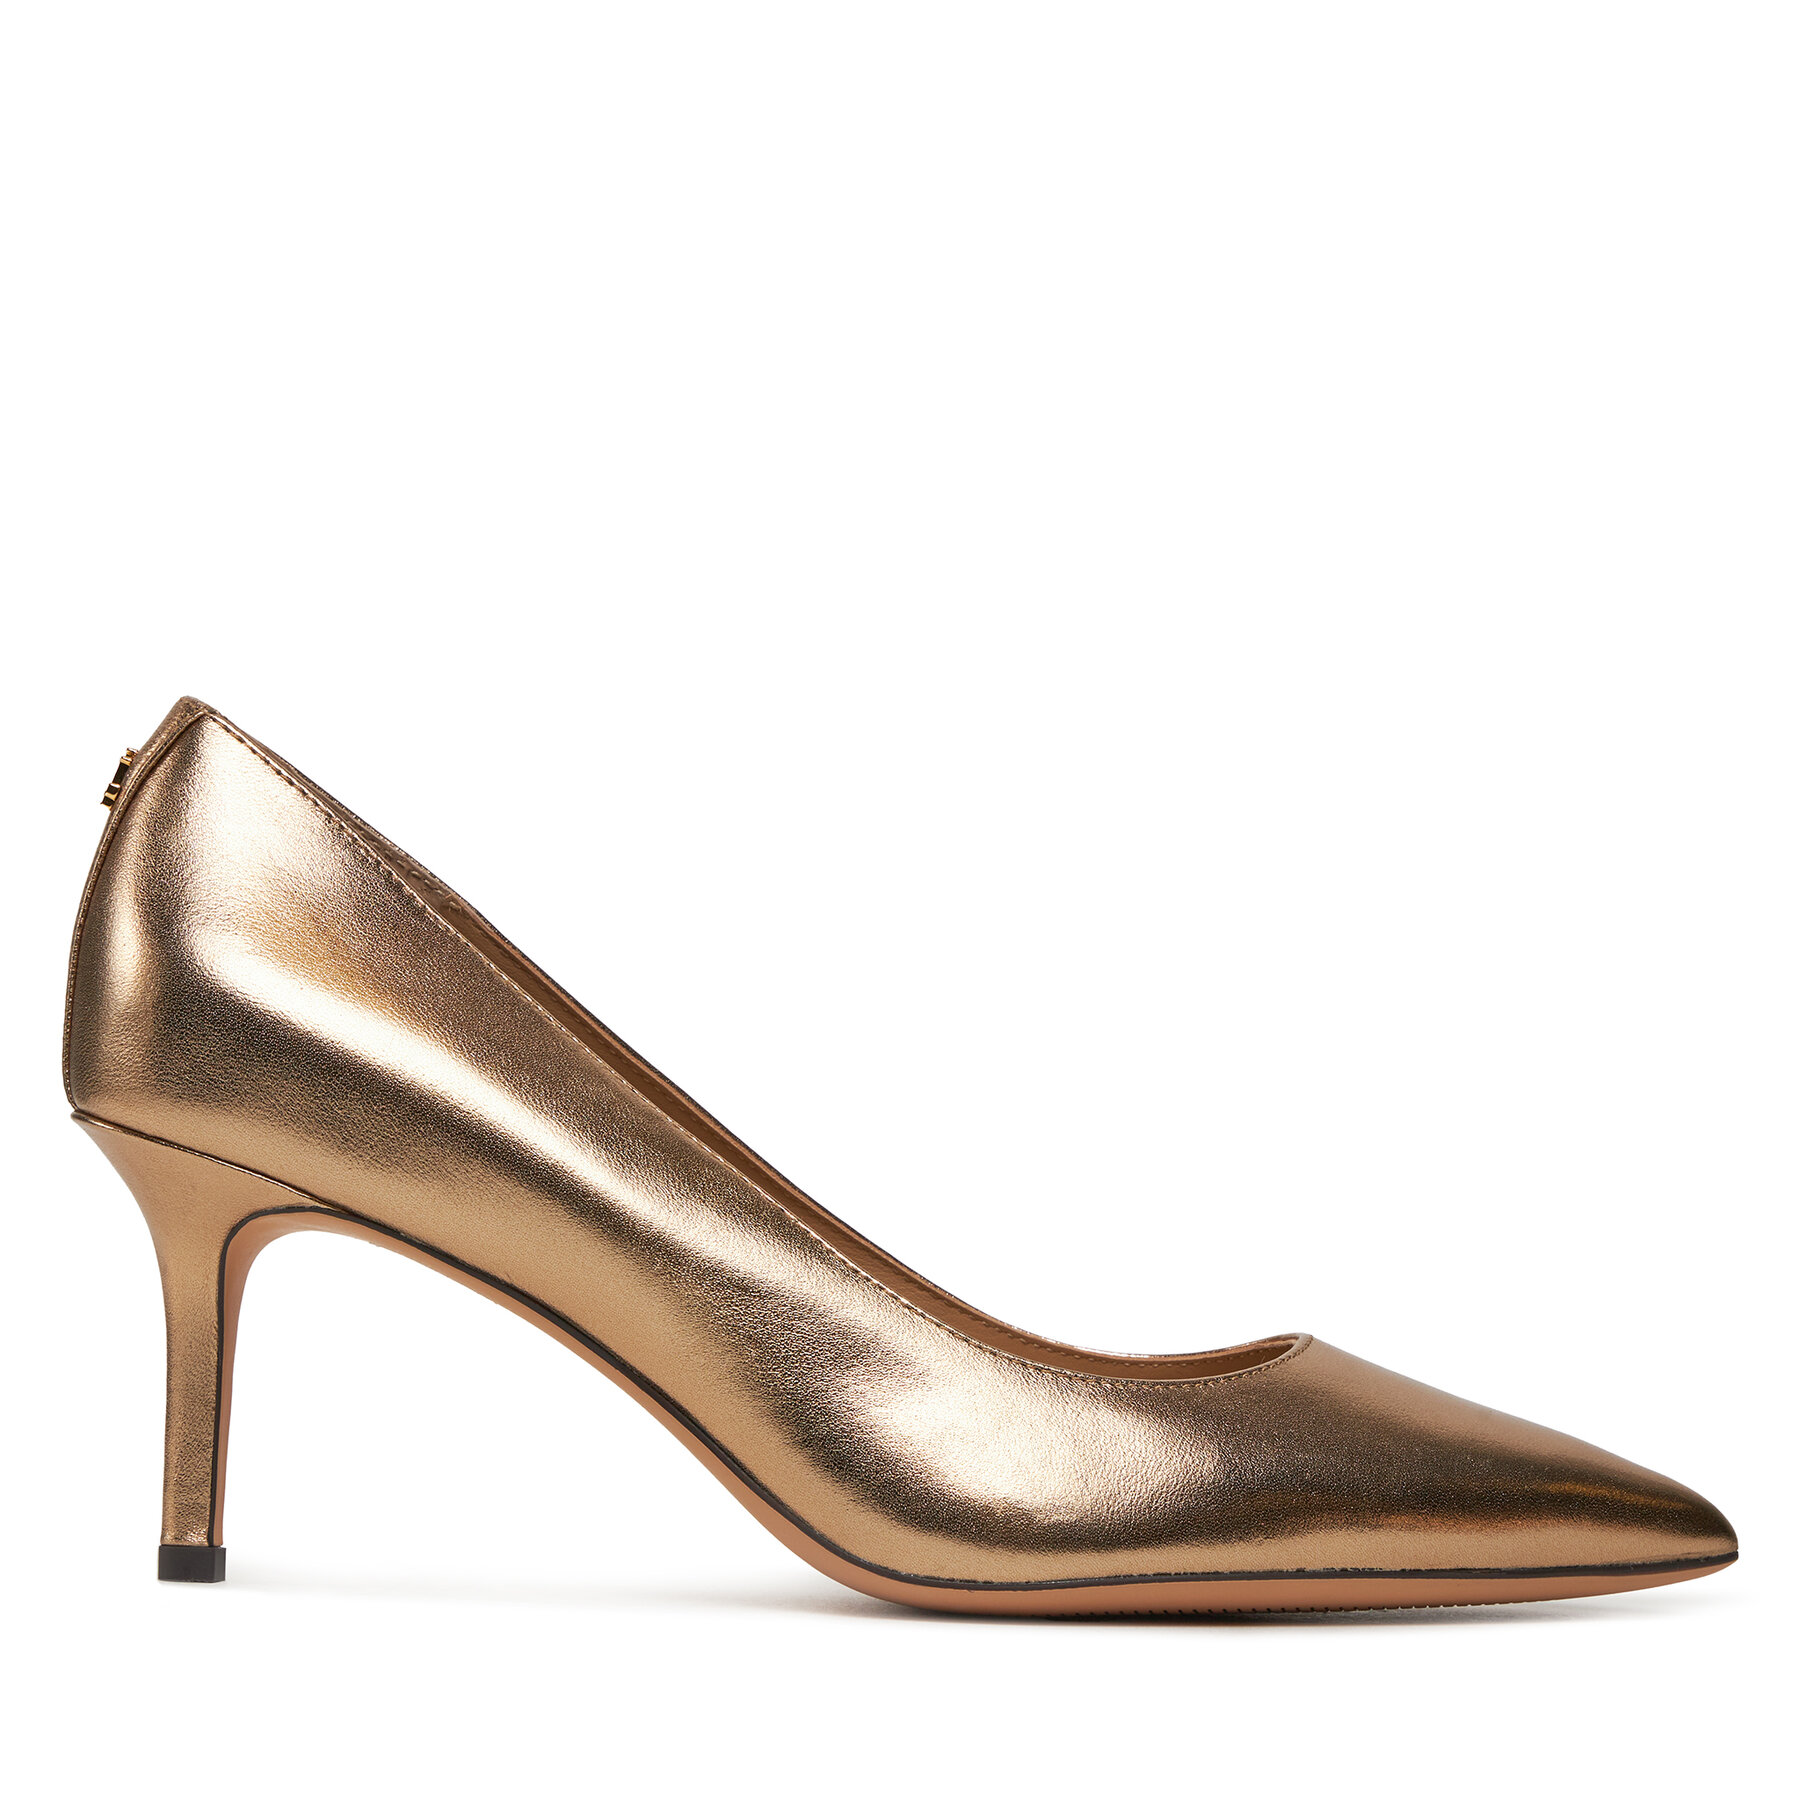 Čevlji z visoko peto Lauren Ralph Lauren Lanette 802925503001 Soft Bronze 200